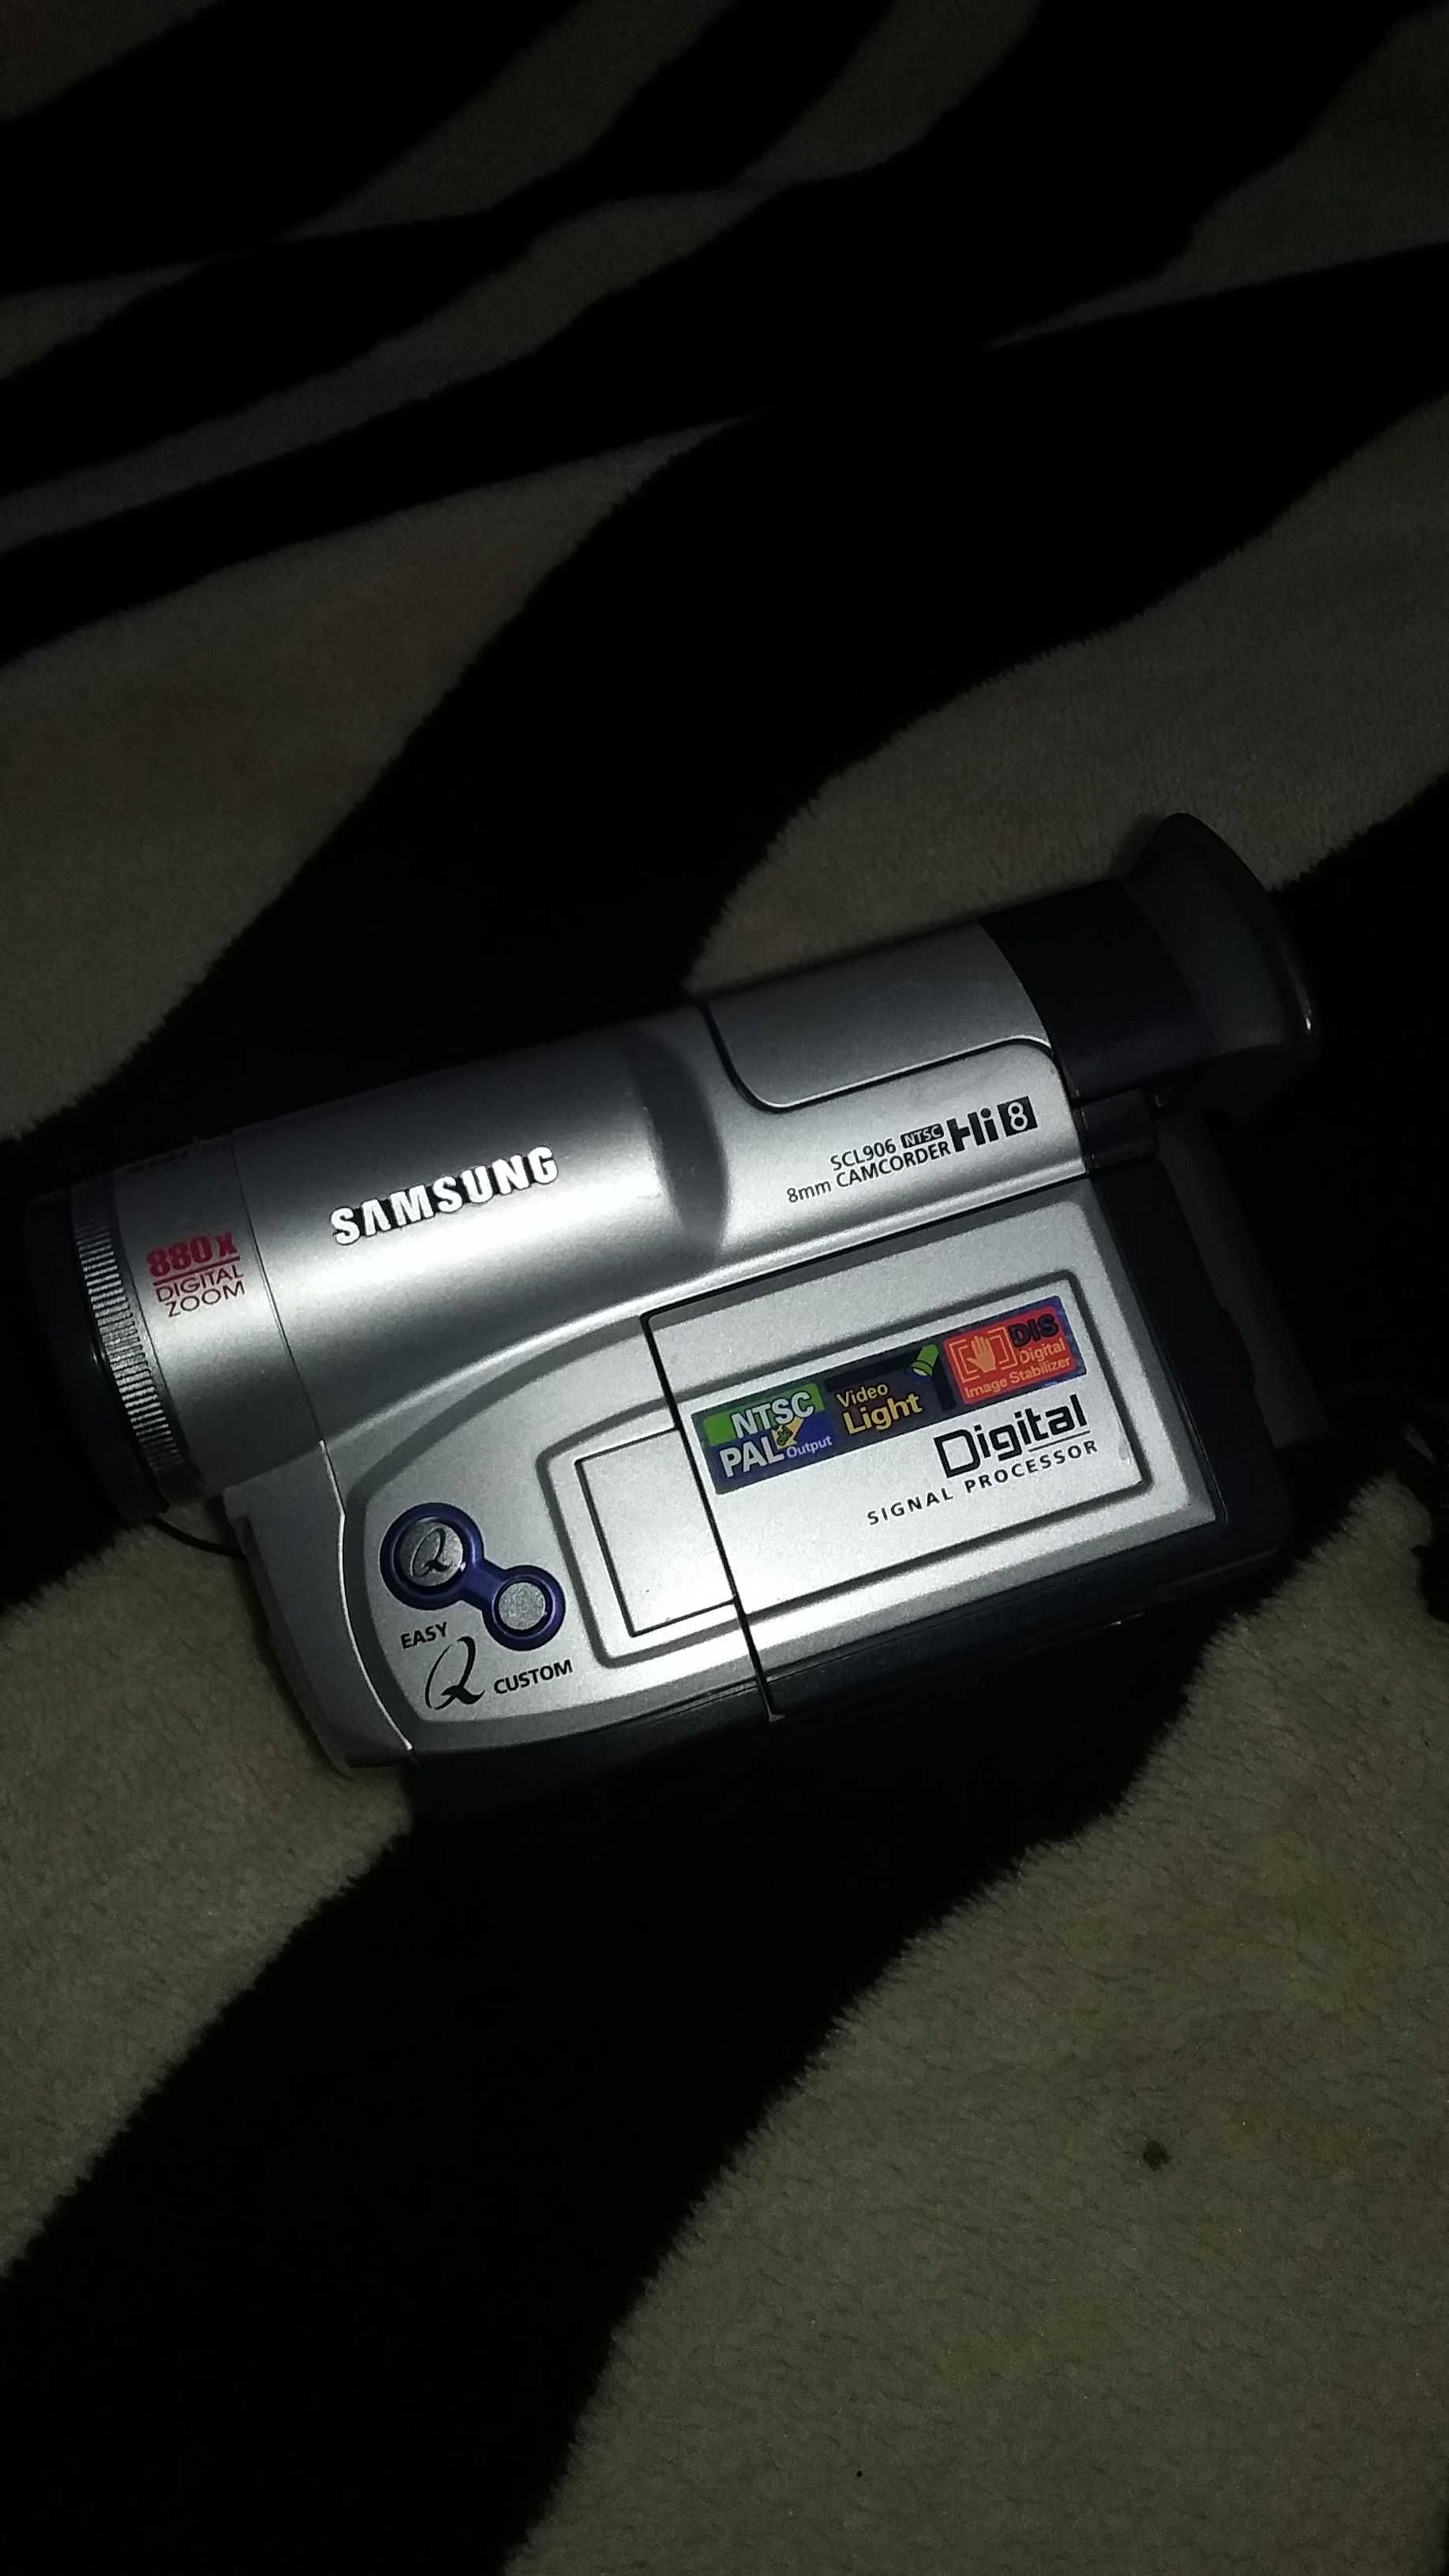 Camcorder Samsung Scl 906 HI8 8 mm